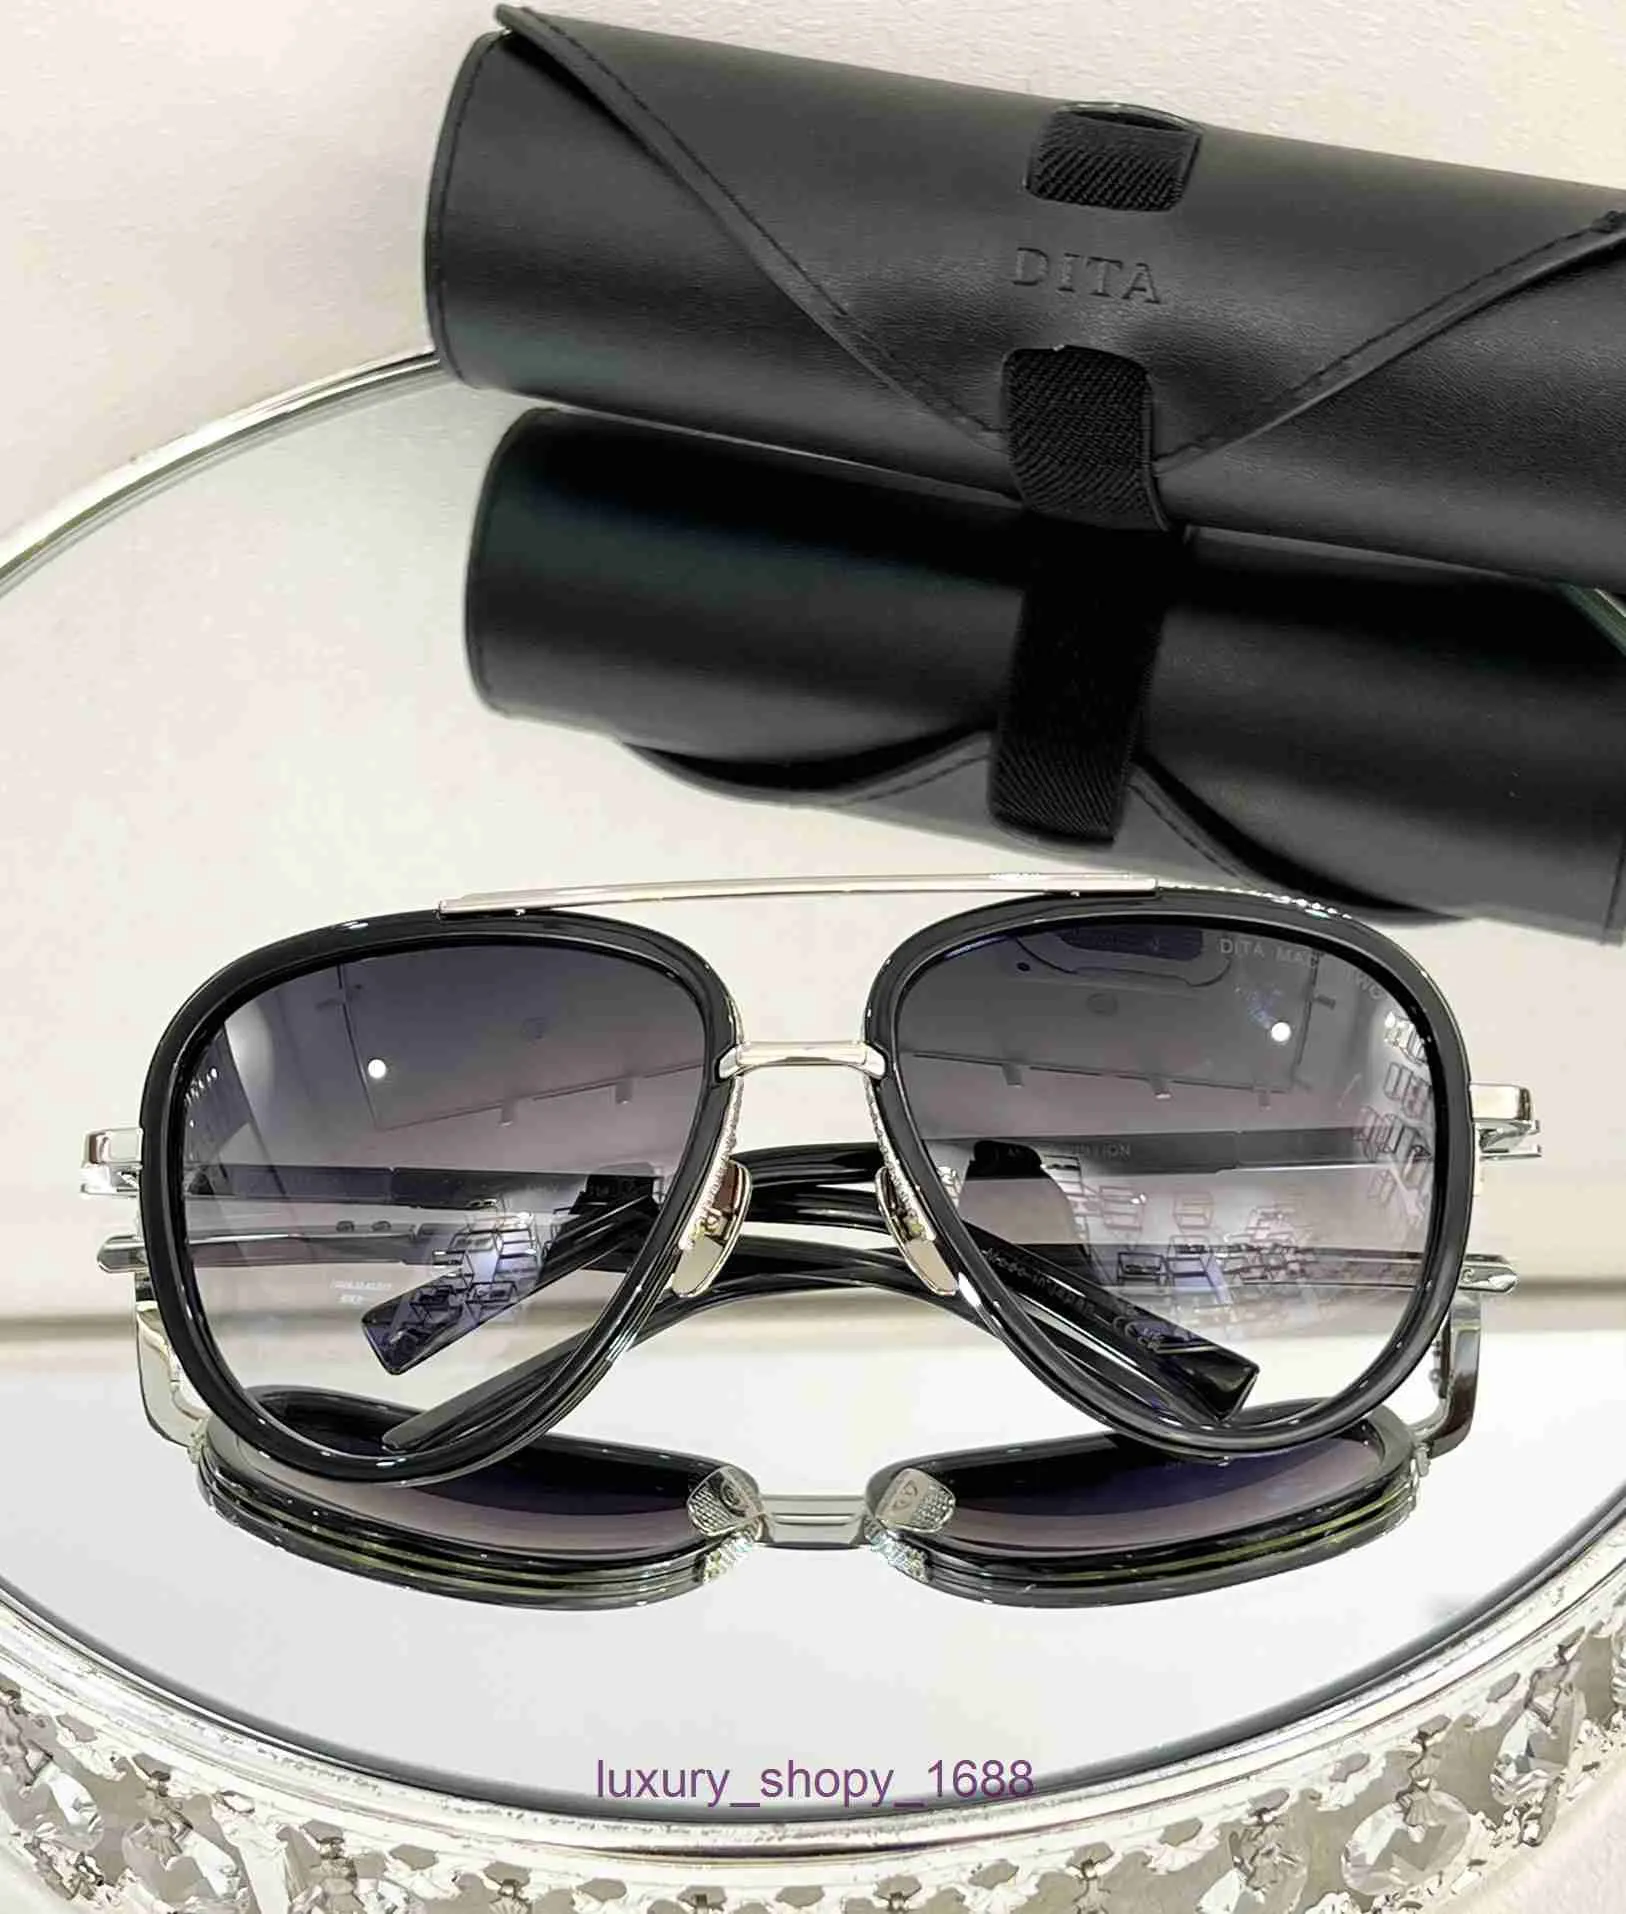 Designer Occhiali da sole alla moda per donna e uomo negozio online DITA frog mirror montatura in titanio MODELLO: DRX-2031 con scatola originale 8FEQ